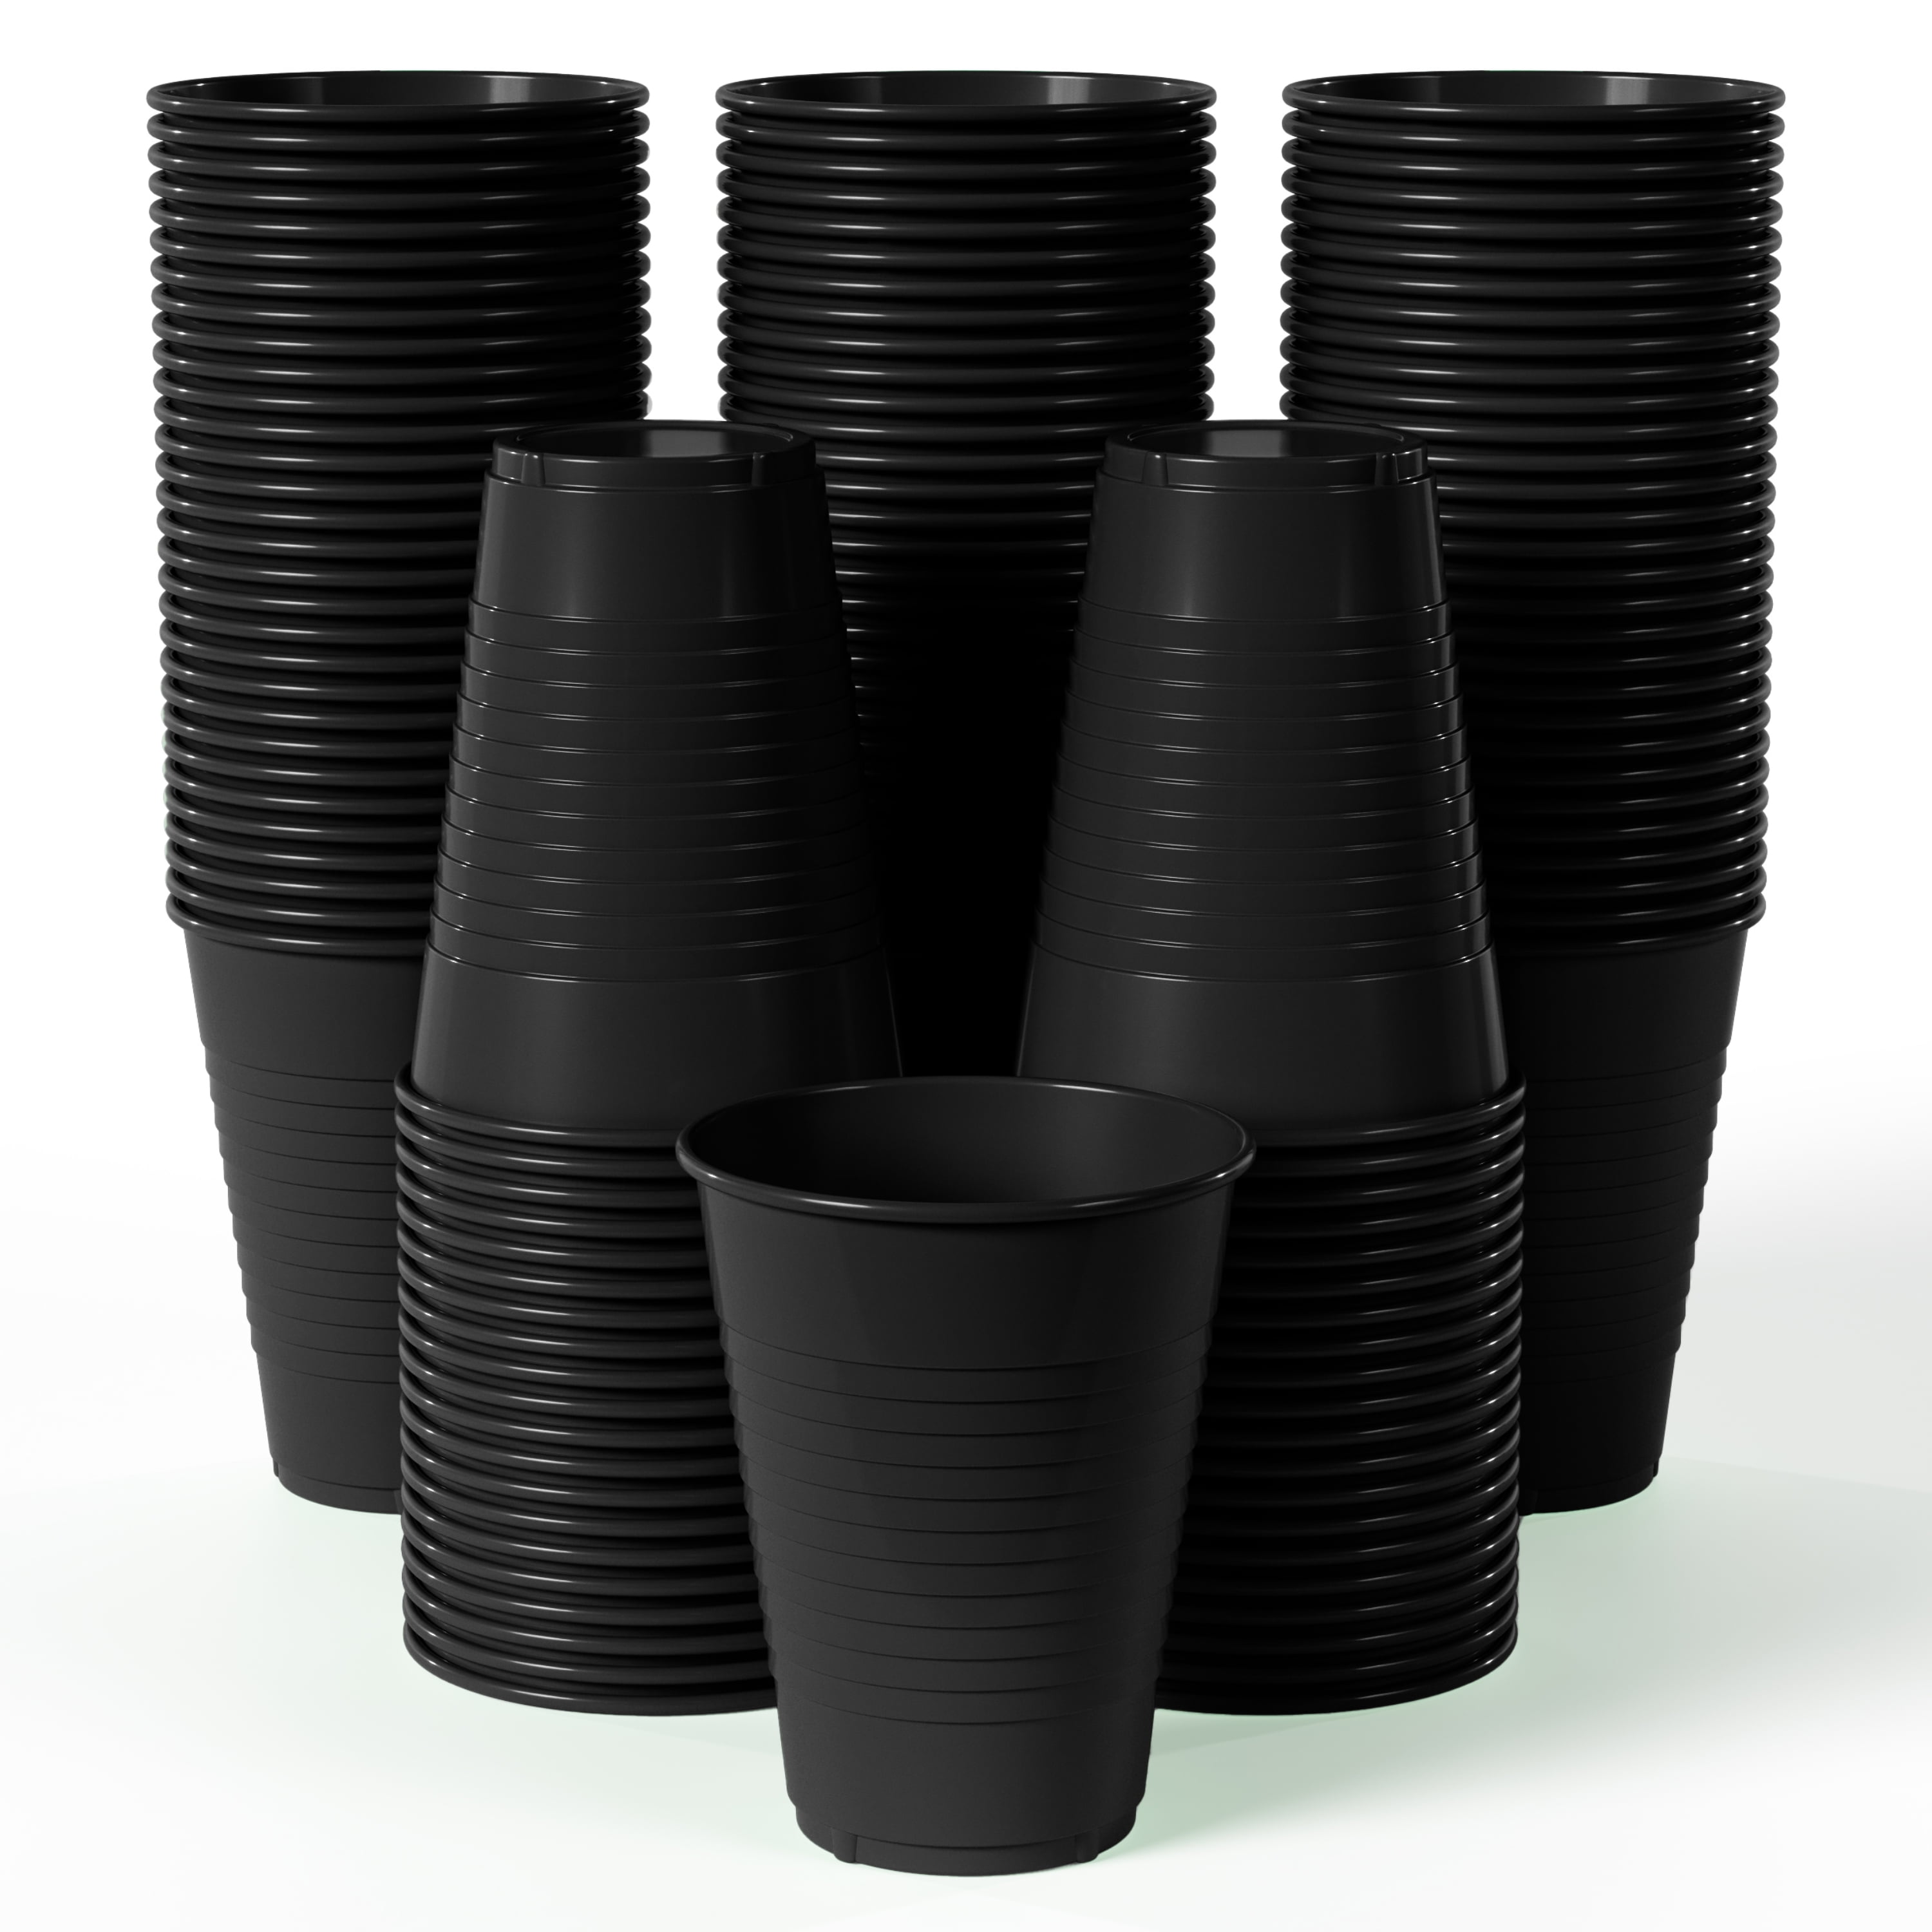 Exquisite Black Heavy Duty Disposable Plastic Cups, Bulk Party Pack, 12 oz  - 100 Count